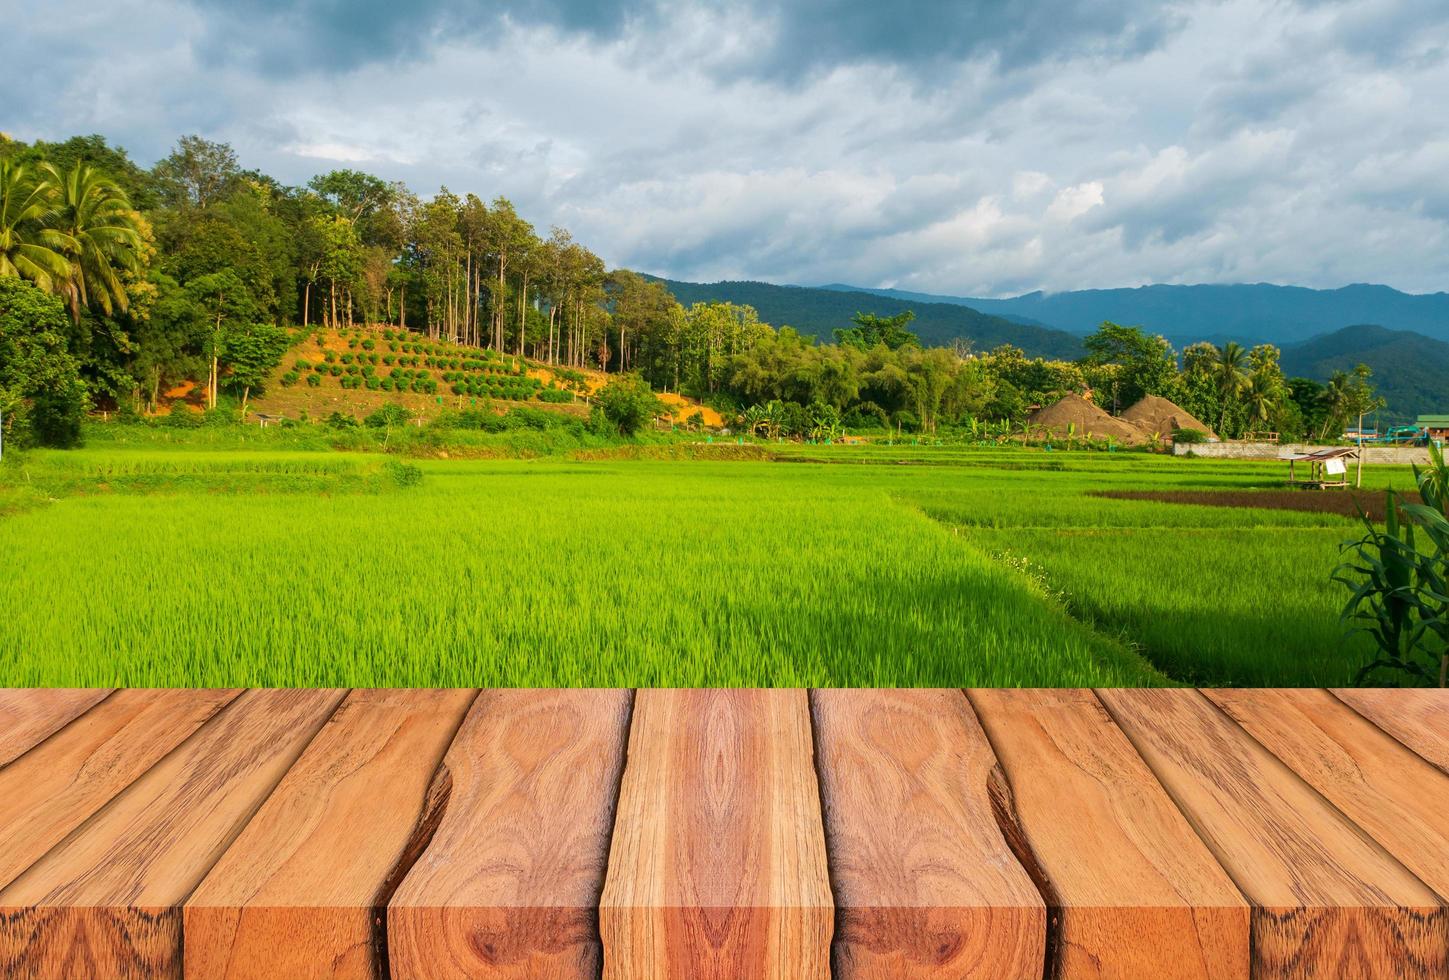 planches de bois et beaux paysages naturels de rizières vertes pendant la saison des pluies. photo